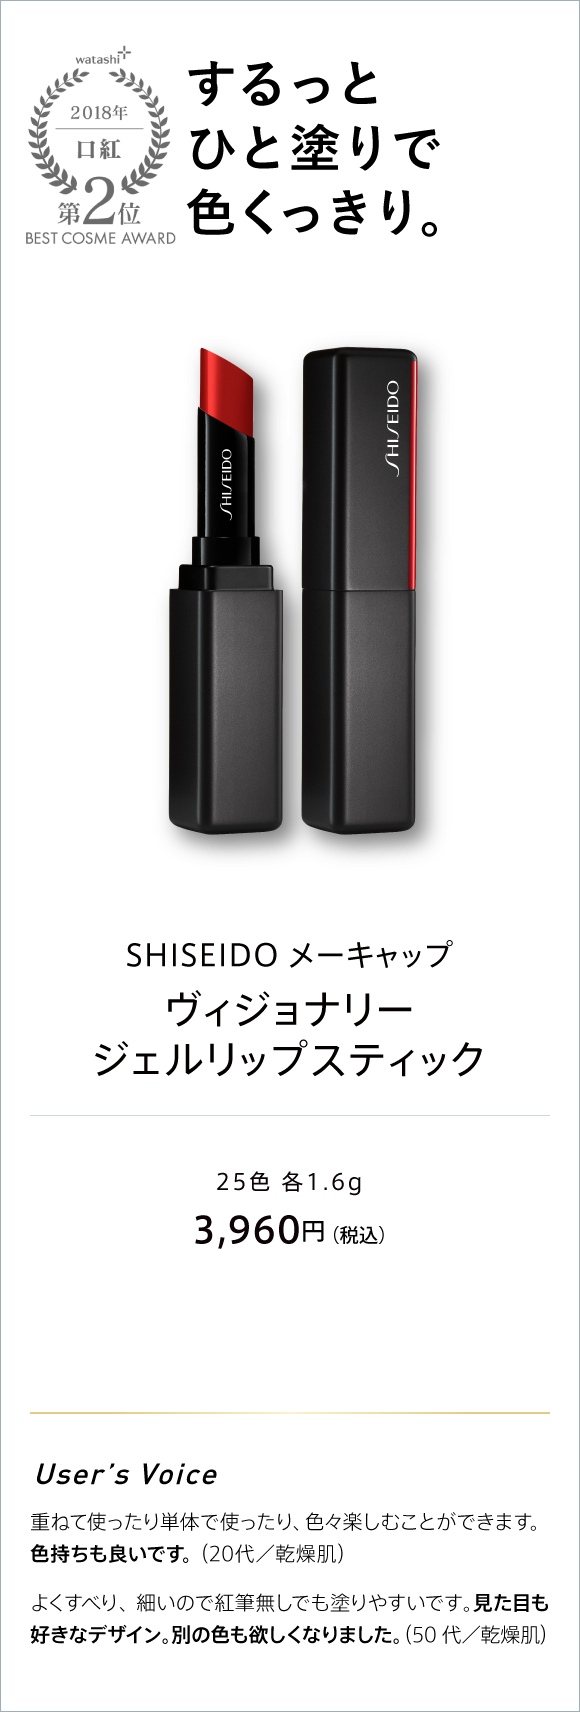 watashi+ 2018 口紅 第2位 BEST COSME AWARD するっとひと塗りで色くっきり。 SHISEIDO メーキャップ ヴィジョナリー ジェルリップスティック 25色 各1.6G 3,960円(税込)